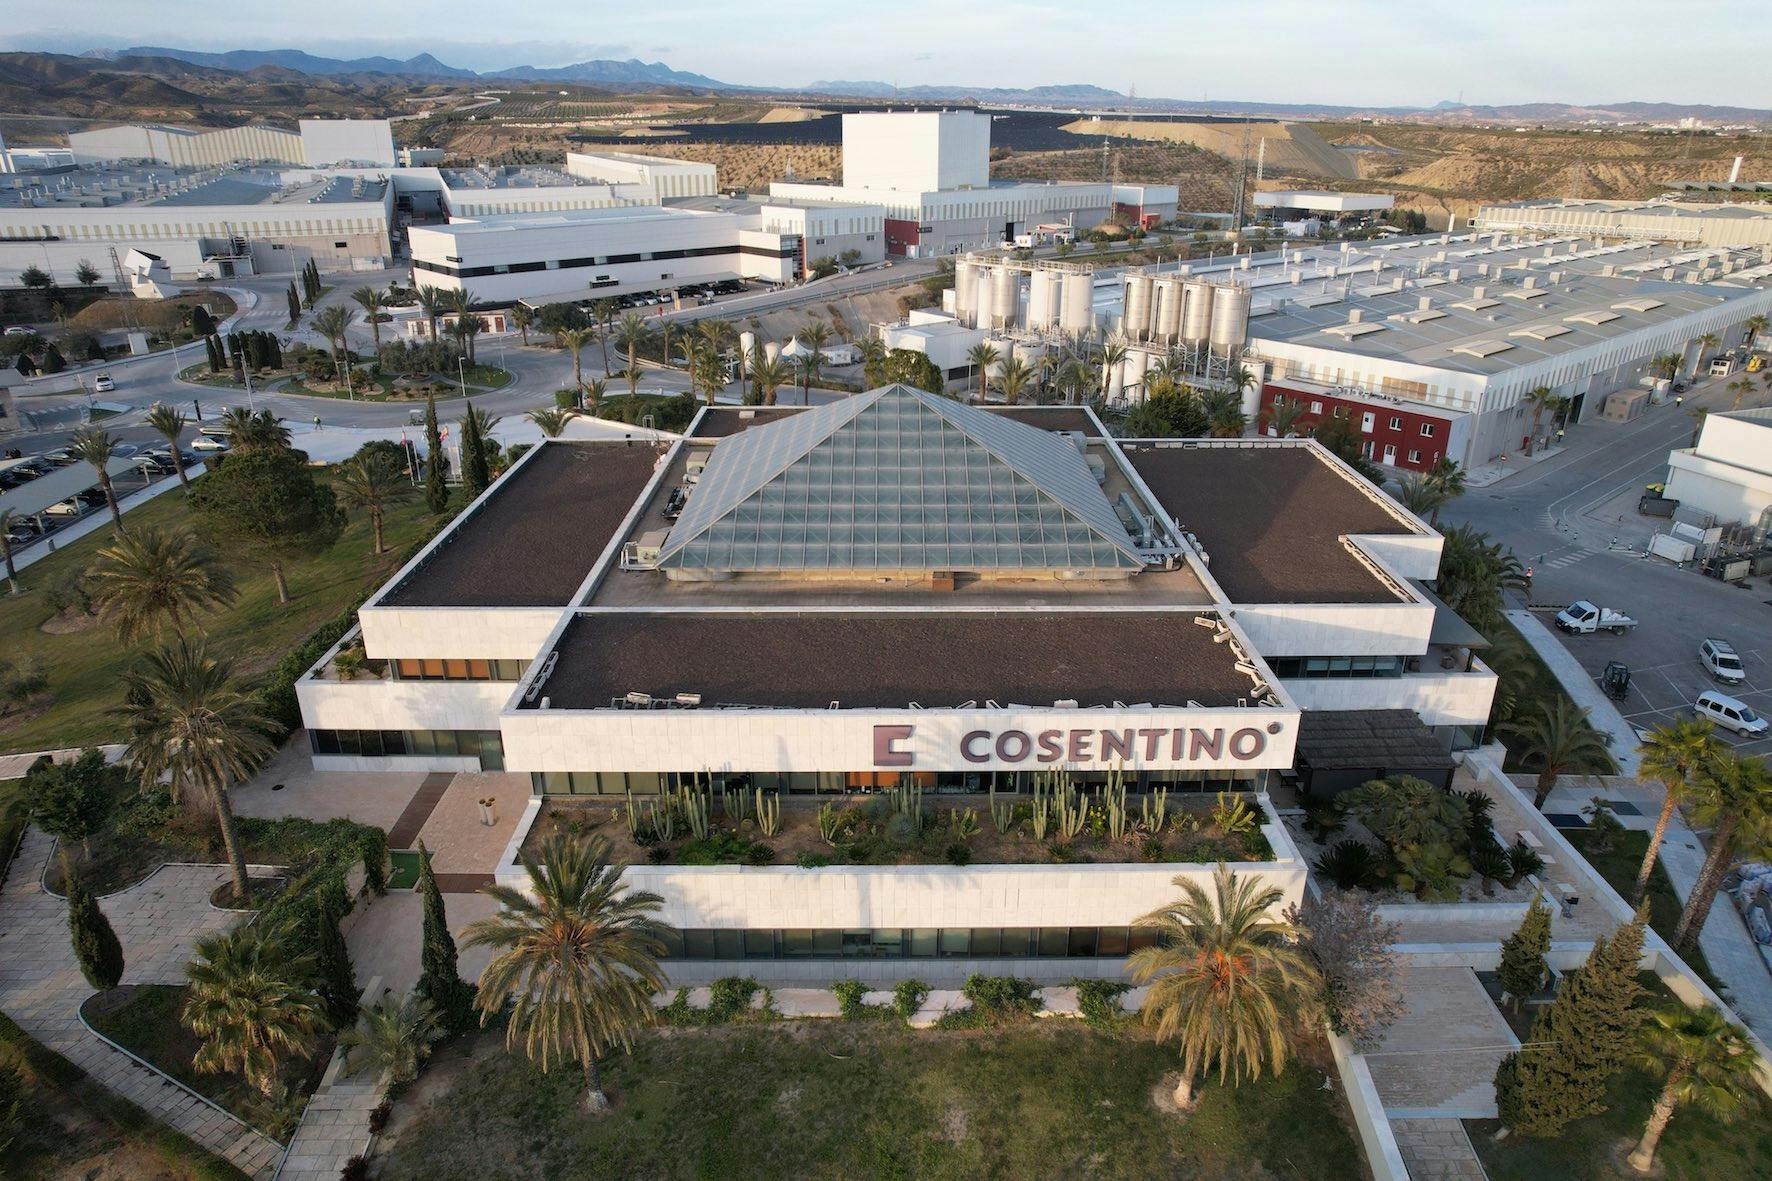 Image 95 of Parque Industrial Cosentino vista aerea oficinas d.jpg?auto=format%2Ccompress&ixlib=php 3.3 in Inspiration - Cosentino